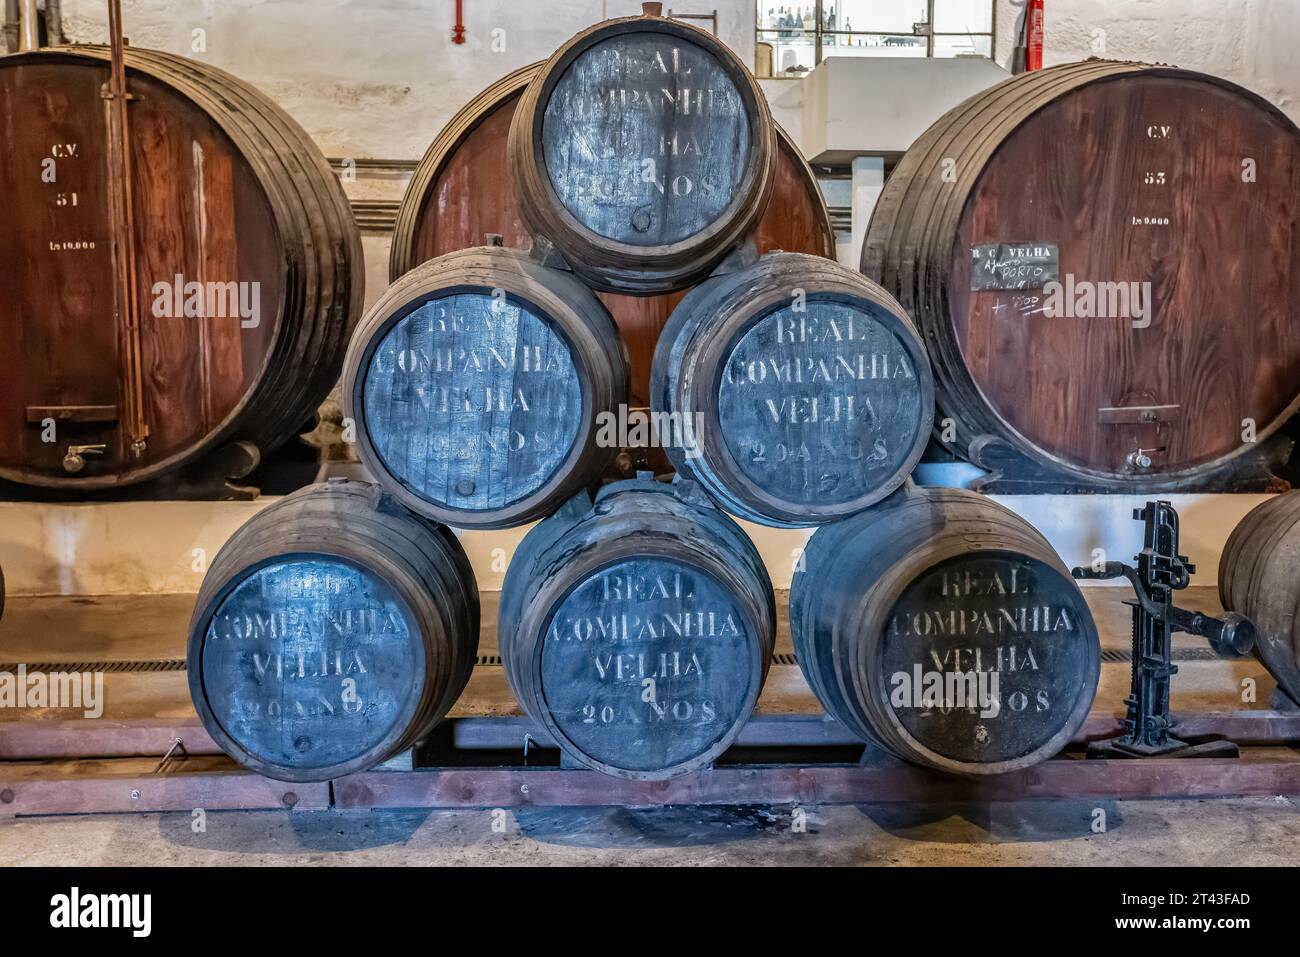 Gros plan de fûts de chêne de vin de Porto vieilli 20 ans à l'intérieur de la cave de la société Real Companhia Velha, Porto, Portugal, le 14 octobre 2023 Banque D'Images